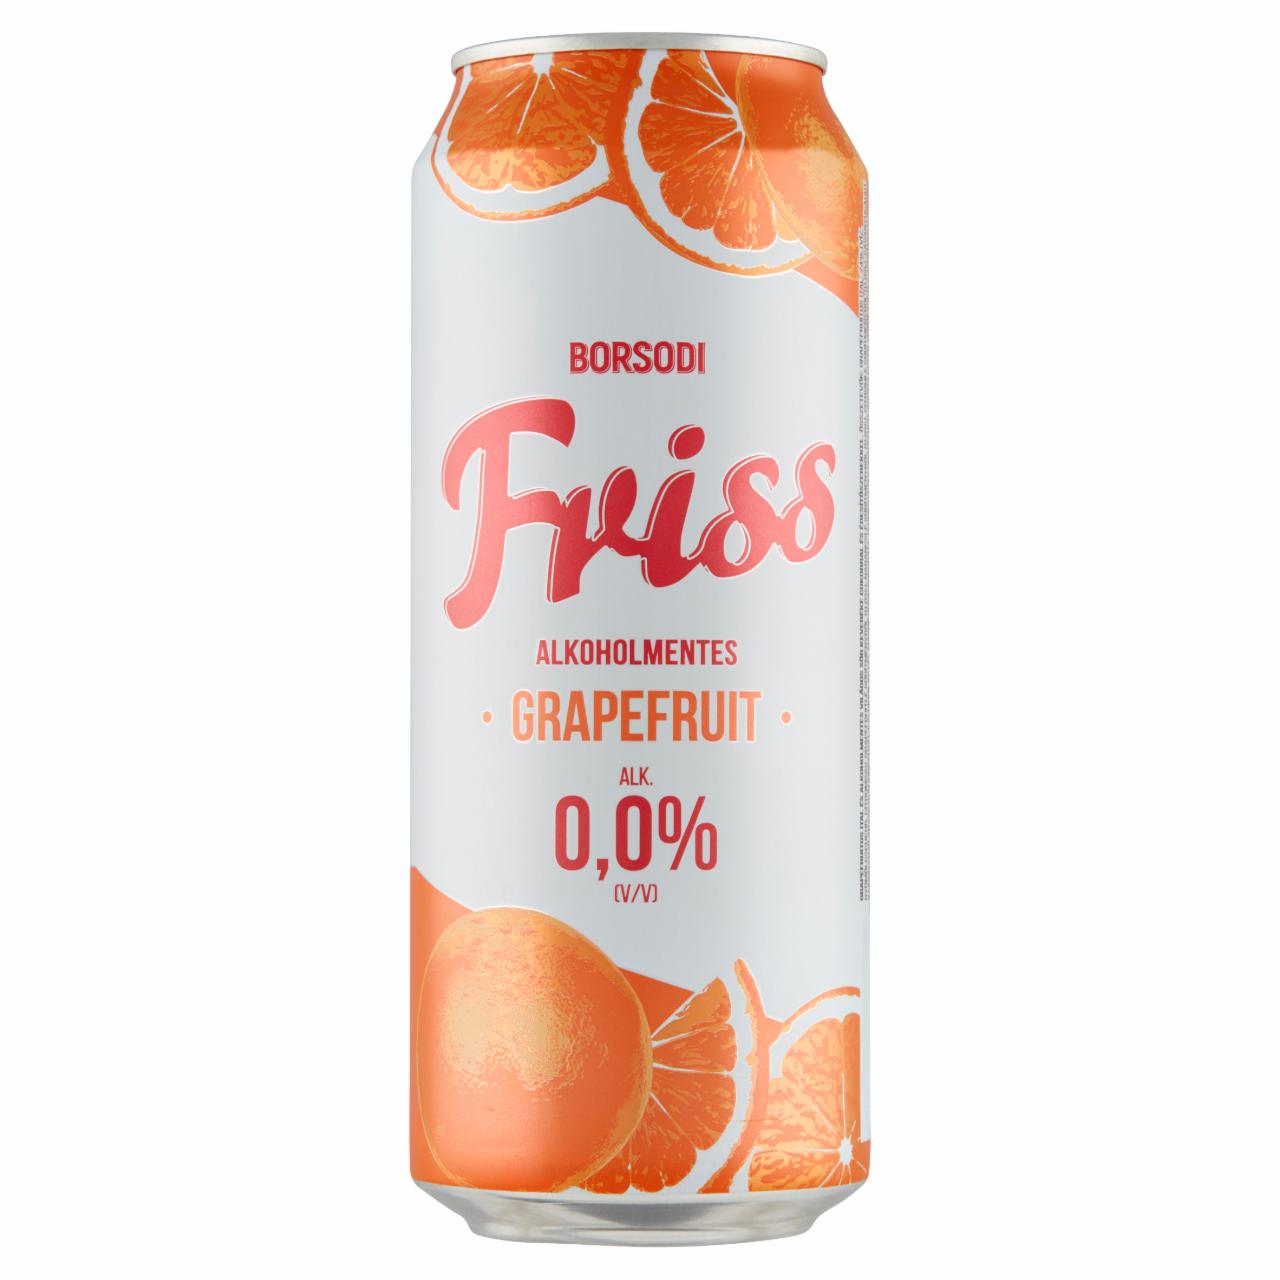 Képek - Borsodi Friss grapefruitos ital és alkoholmentes világos sör keveréke 0,5 l